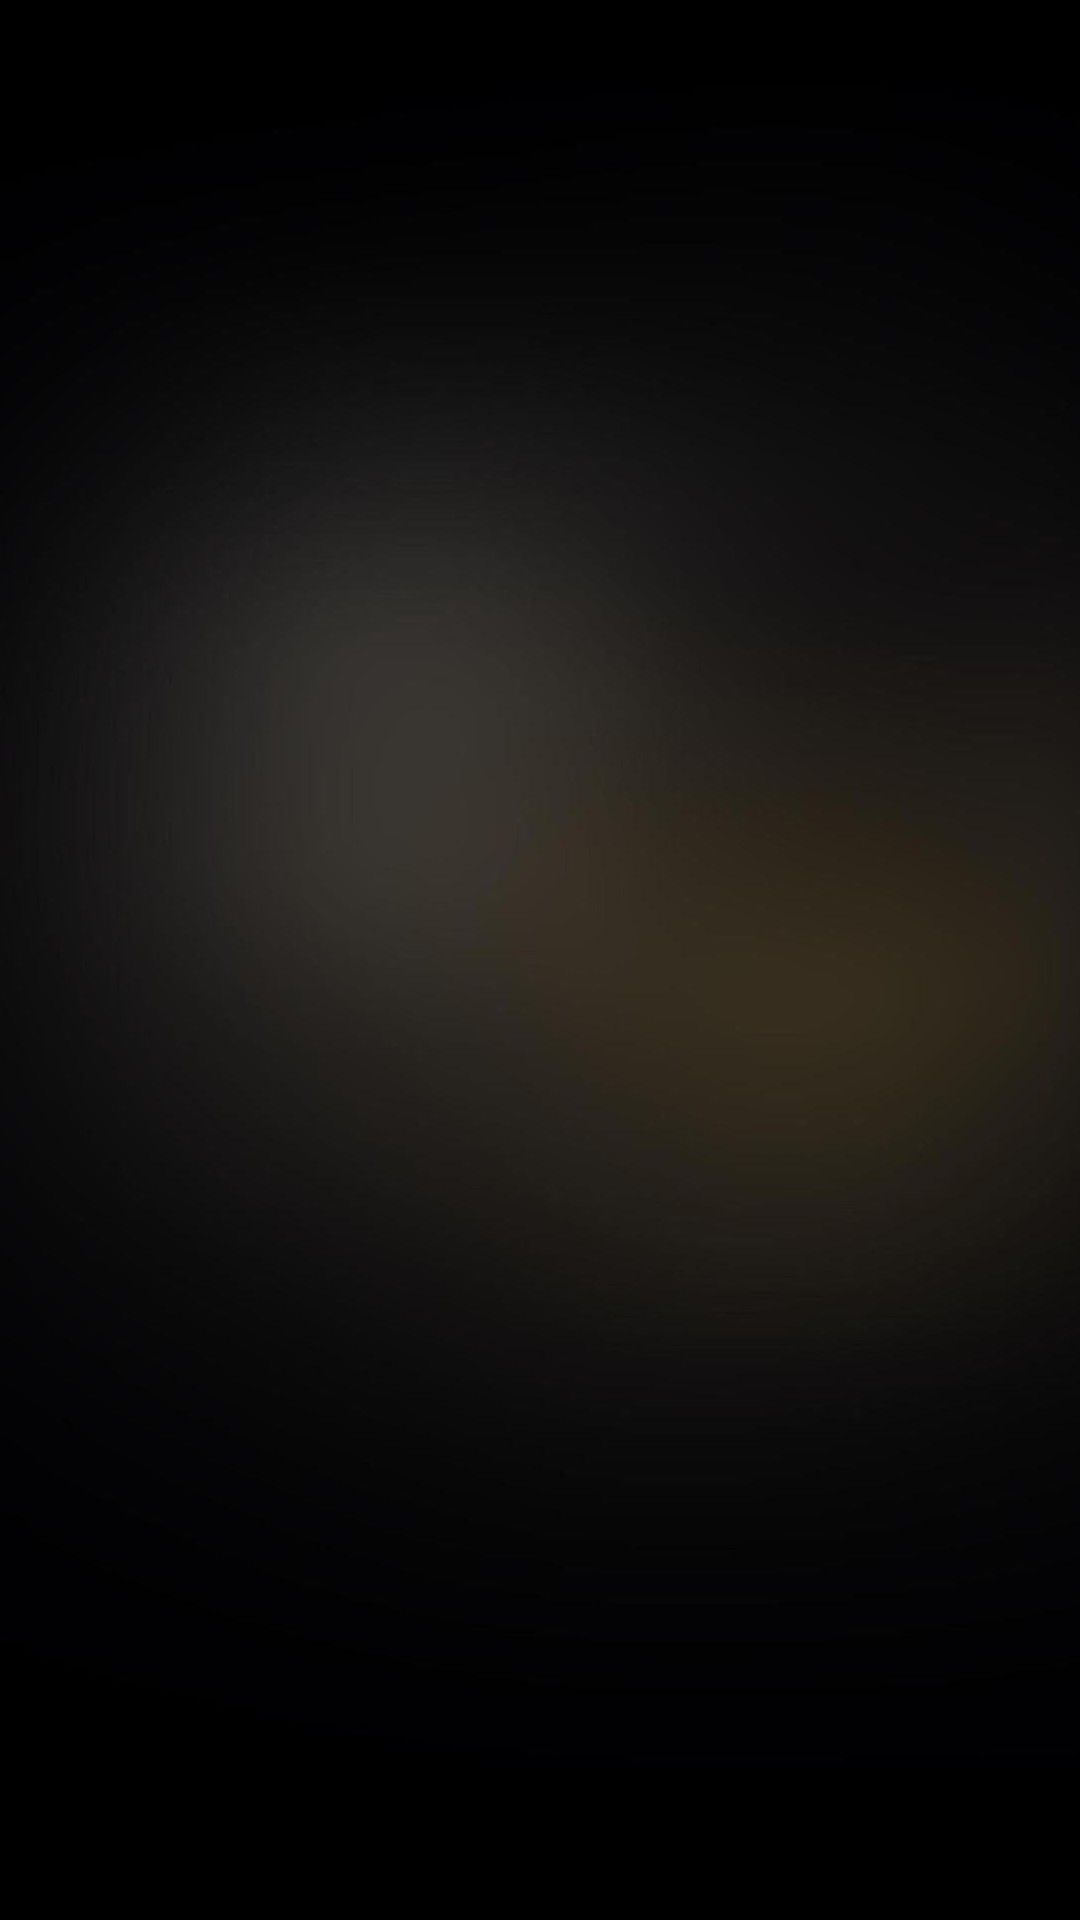 Black Blur Galaxy S4 Wallpaper 1080x1920